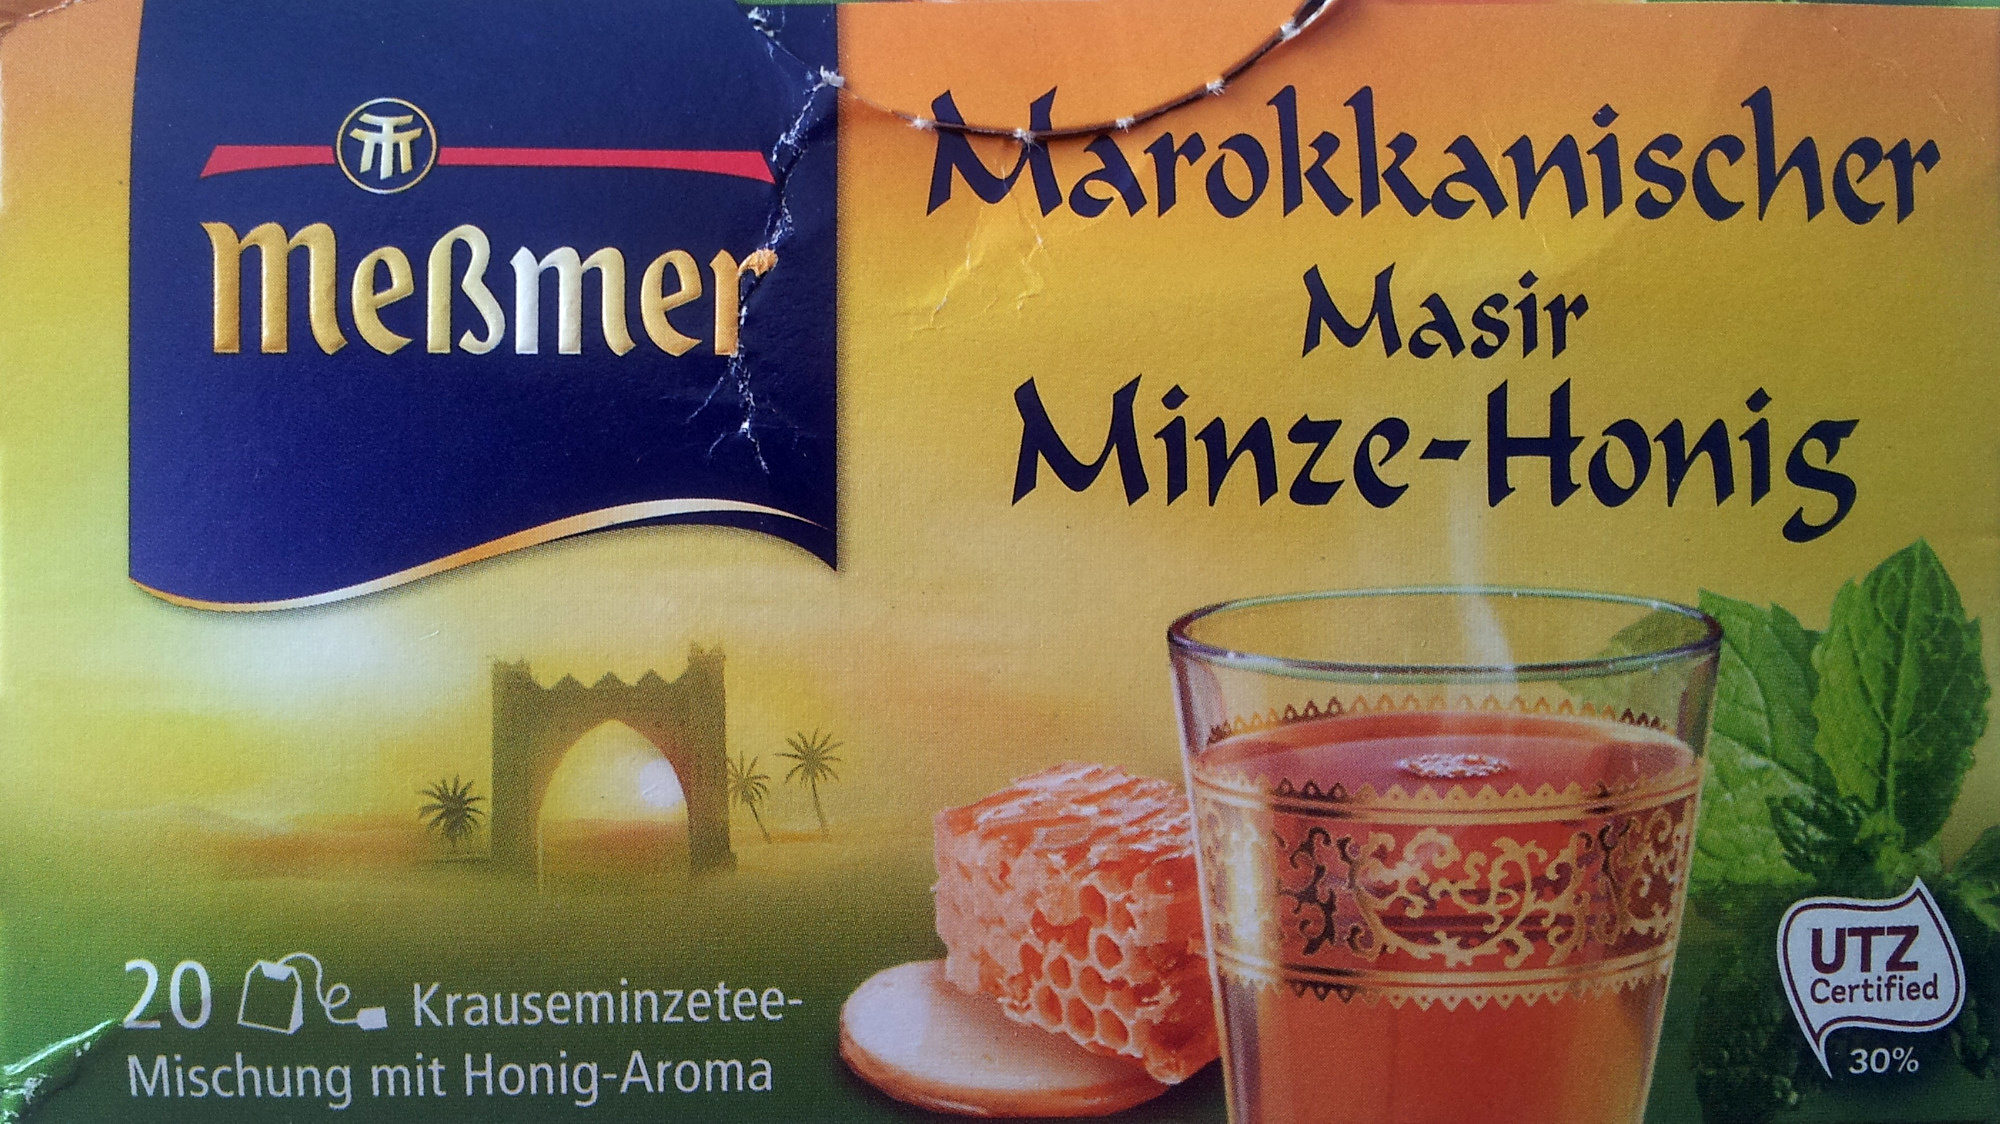 Meßmer Marokkanischer Masir Minze-Honig - Produkt